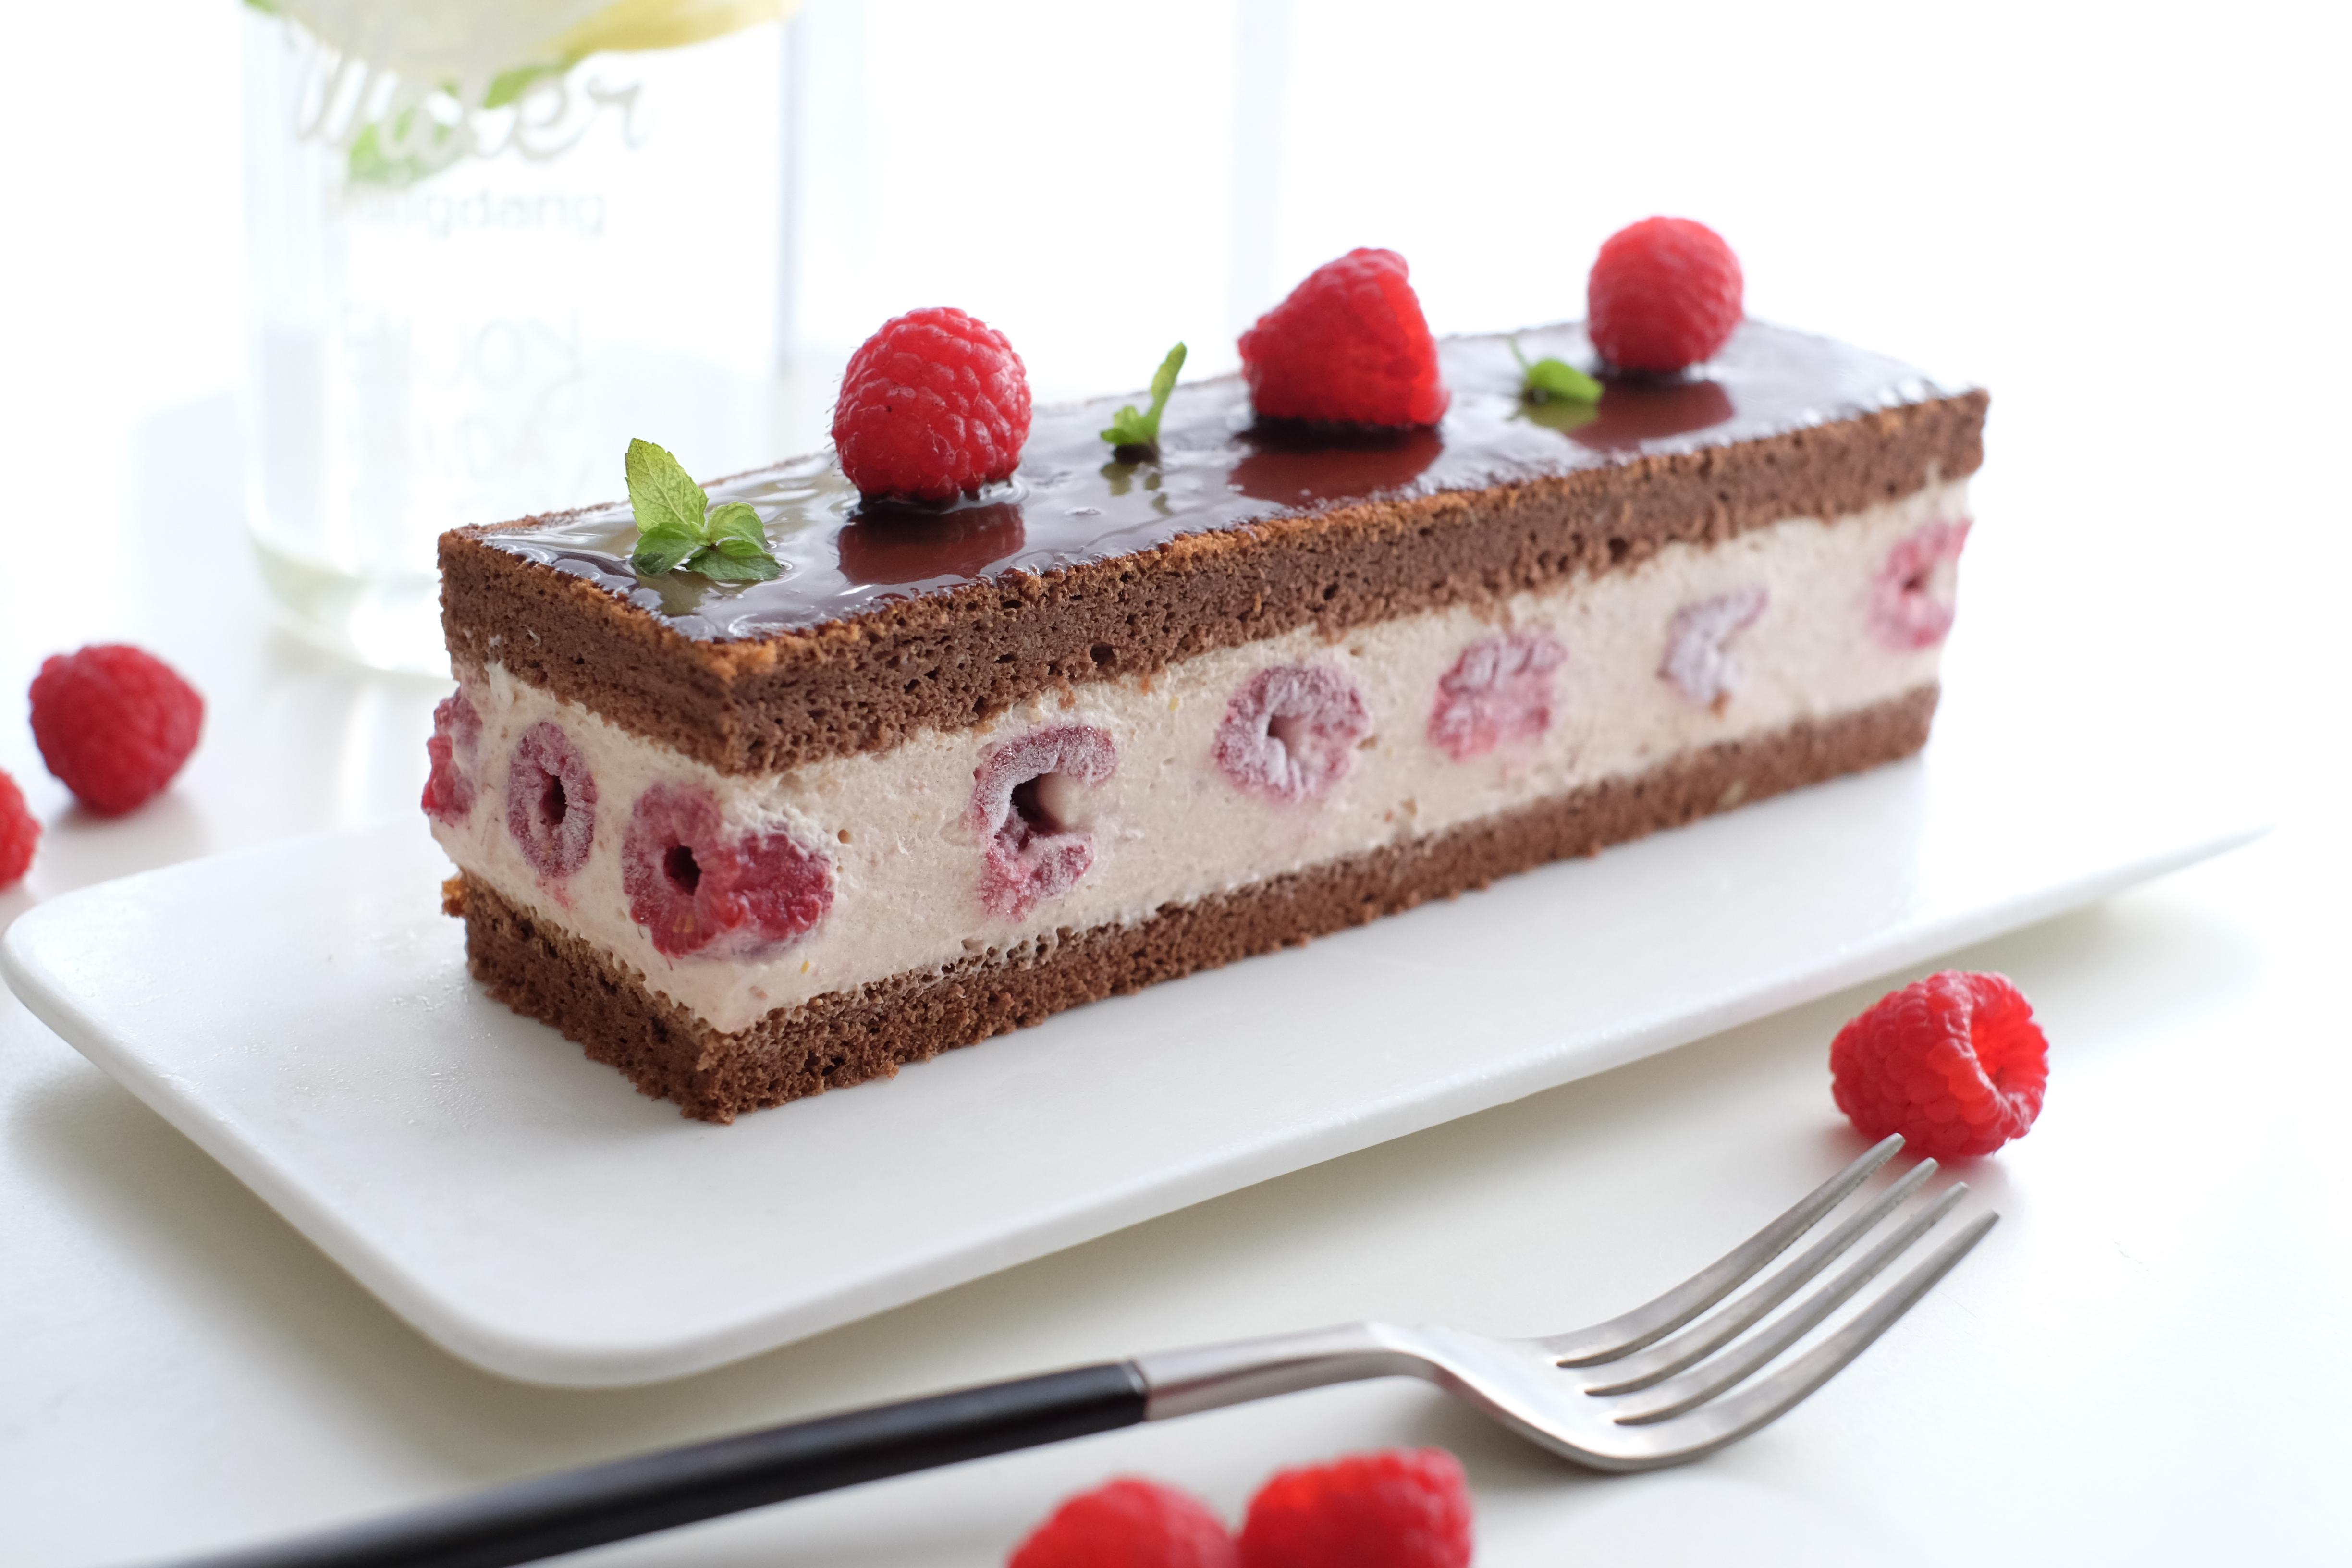 「法式樱桃?慕斯」免烤箱-高颜粉嫩系列蛋糕 酸甜冰淇淋口感 好吃不腻 - 哔哩哔哩